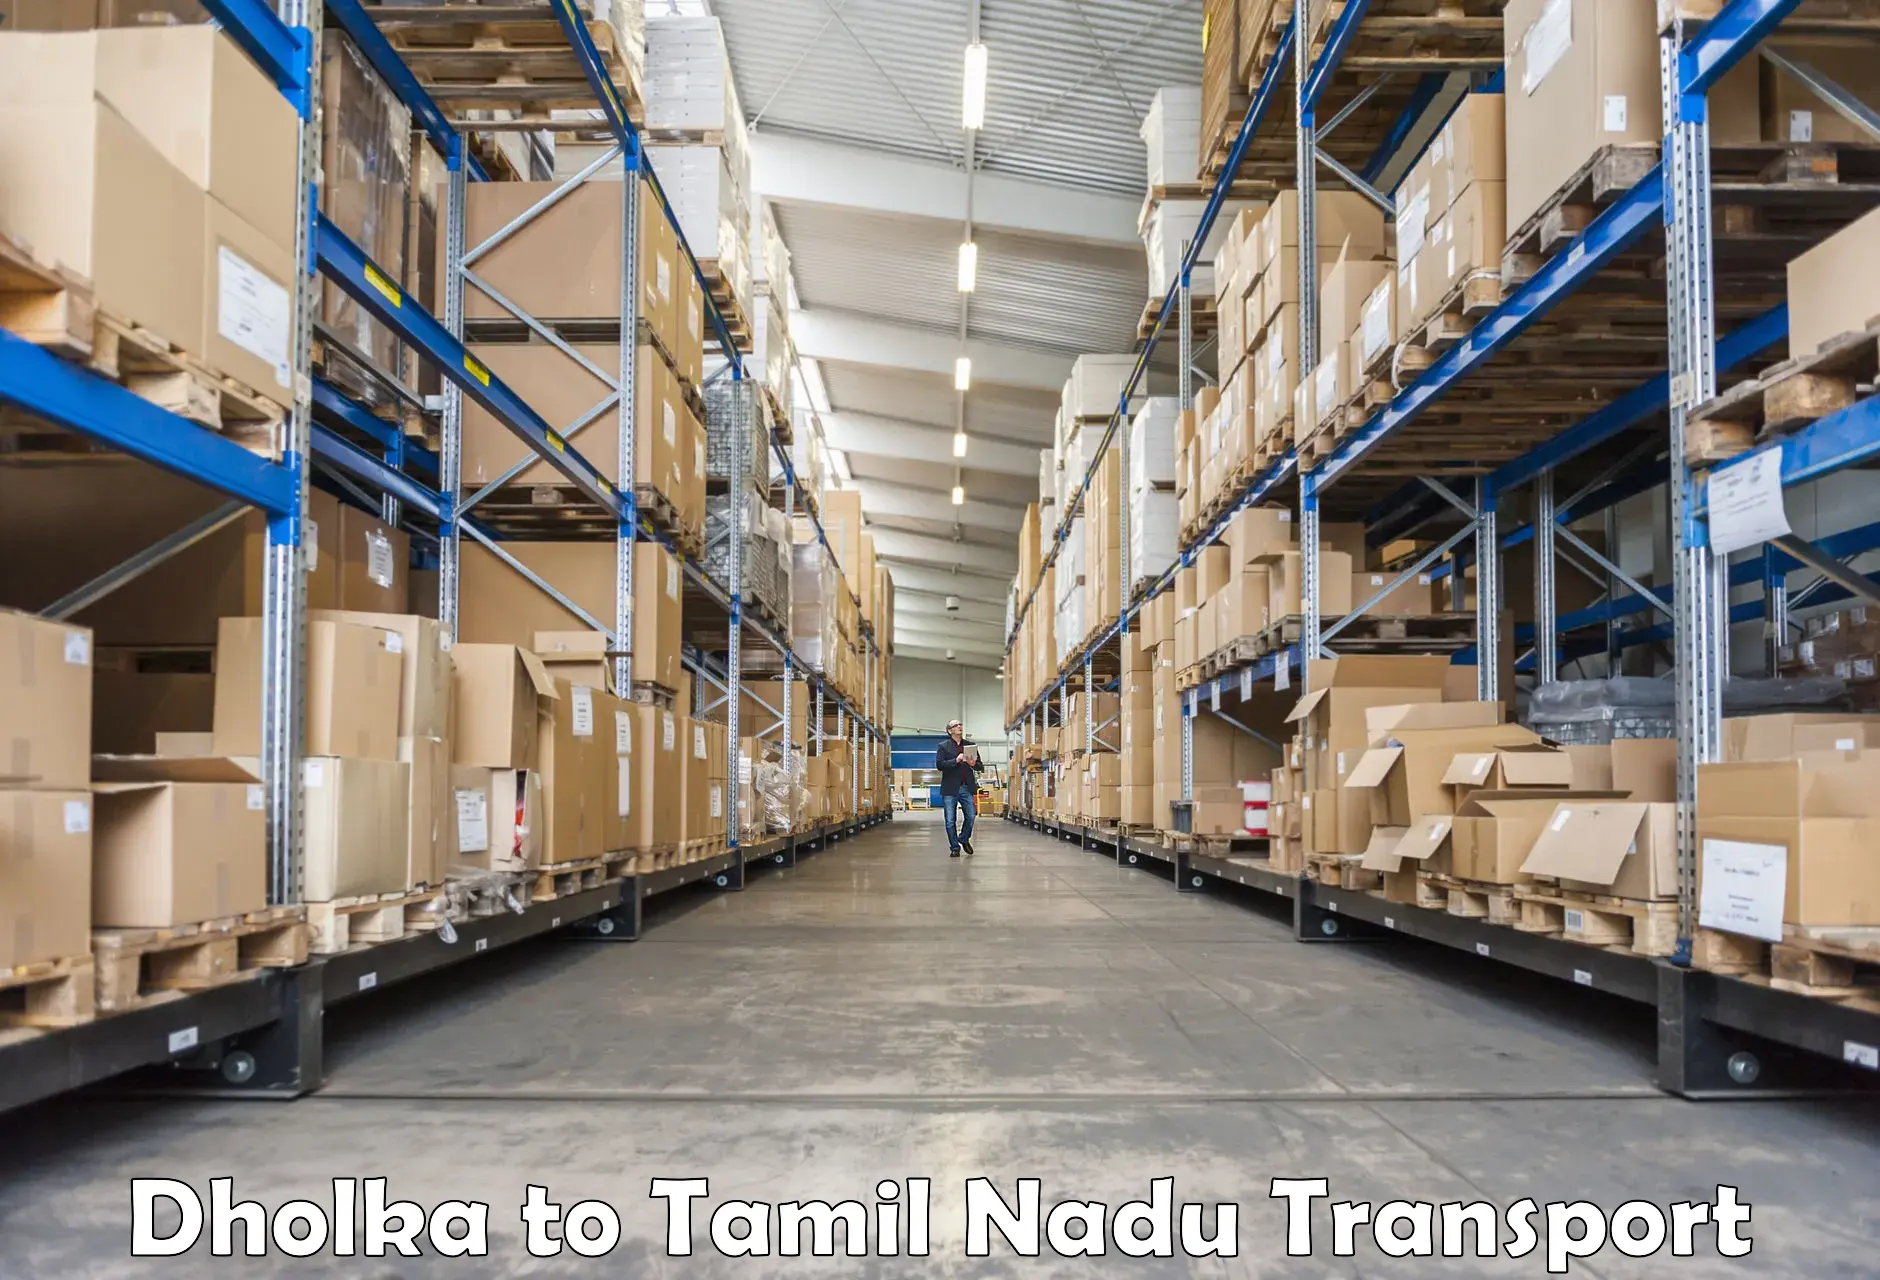 Door to door transport services Dholka to Tamil Nadu